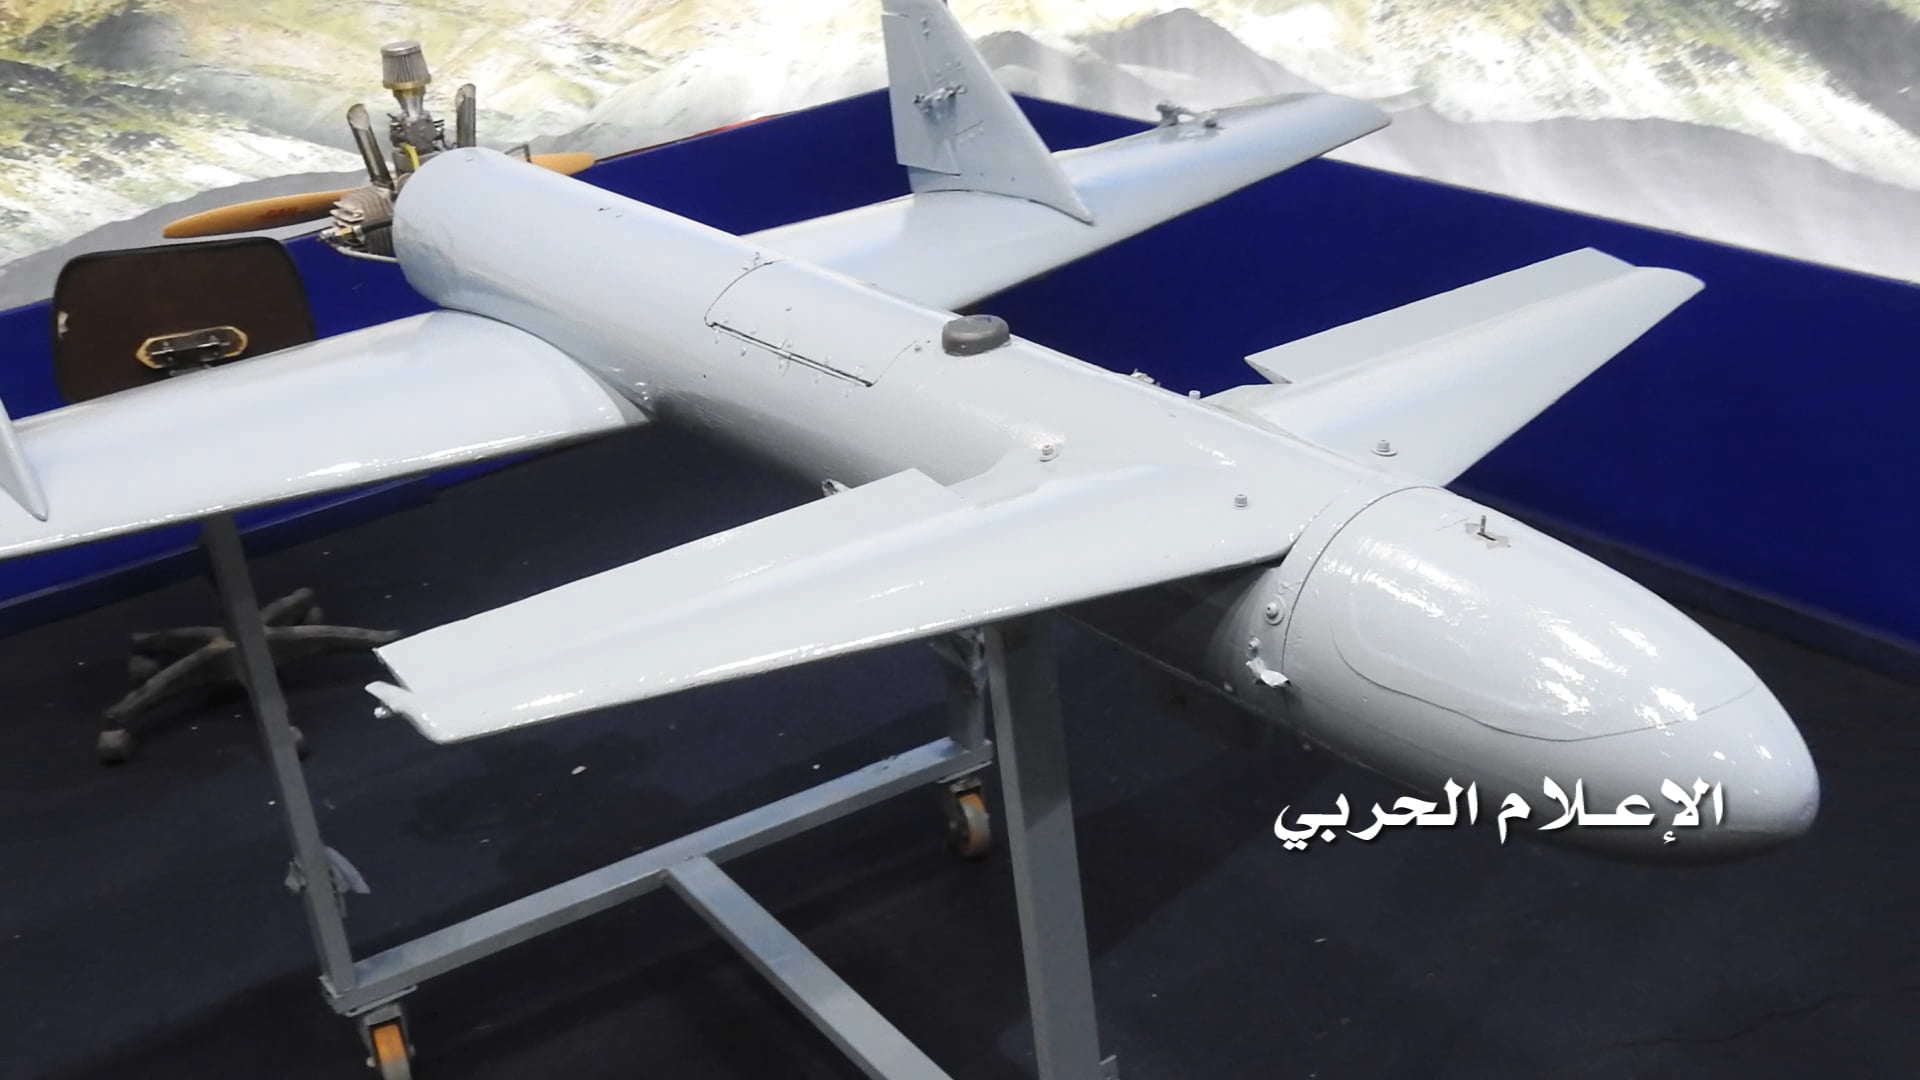 ΕΠΙΘΕΣΗ ΜΕ DRONE ΣΤΗ ΣΑΟΥΔΙΚΗ ΑΡΑΒΙΑ: Οι Χούθι συνεχίζουν την πίεση στο Ριάντ